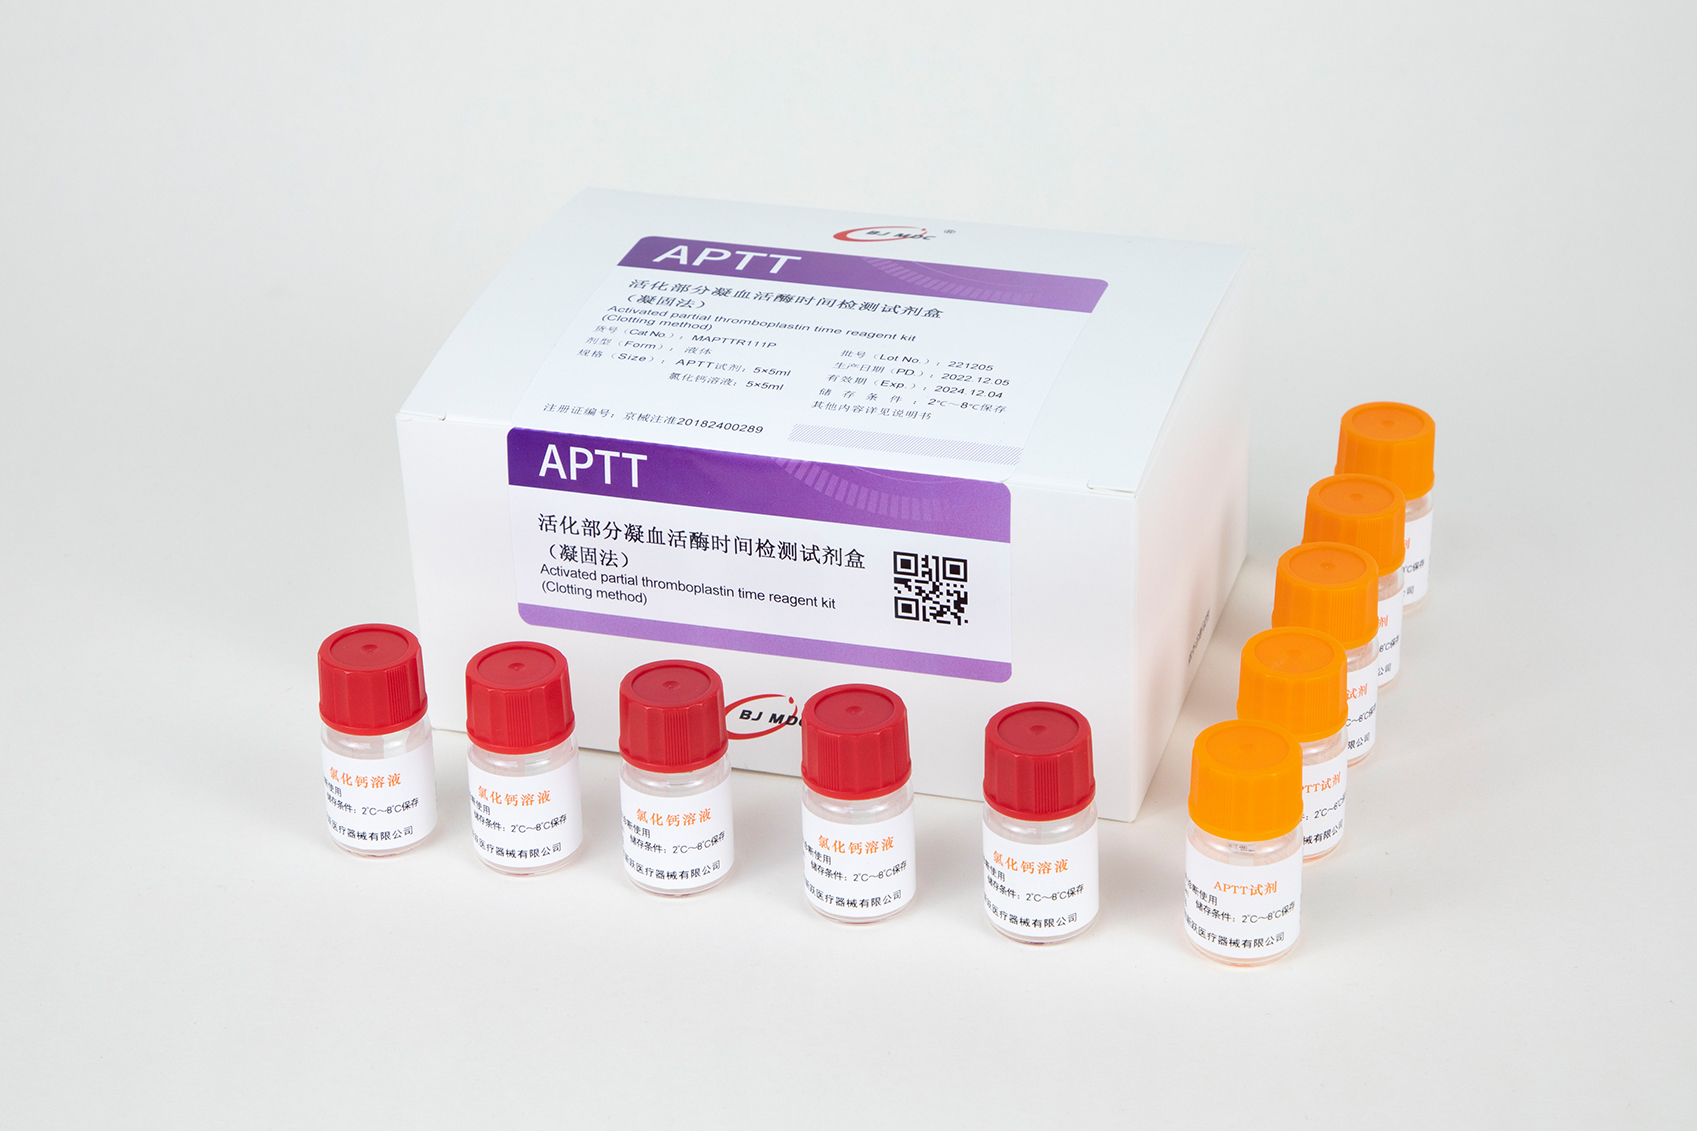 活化部分凝血活酶时间检测试剂盒